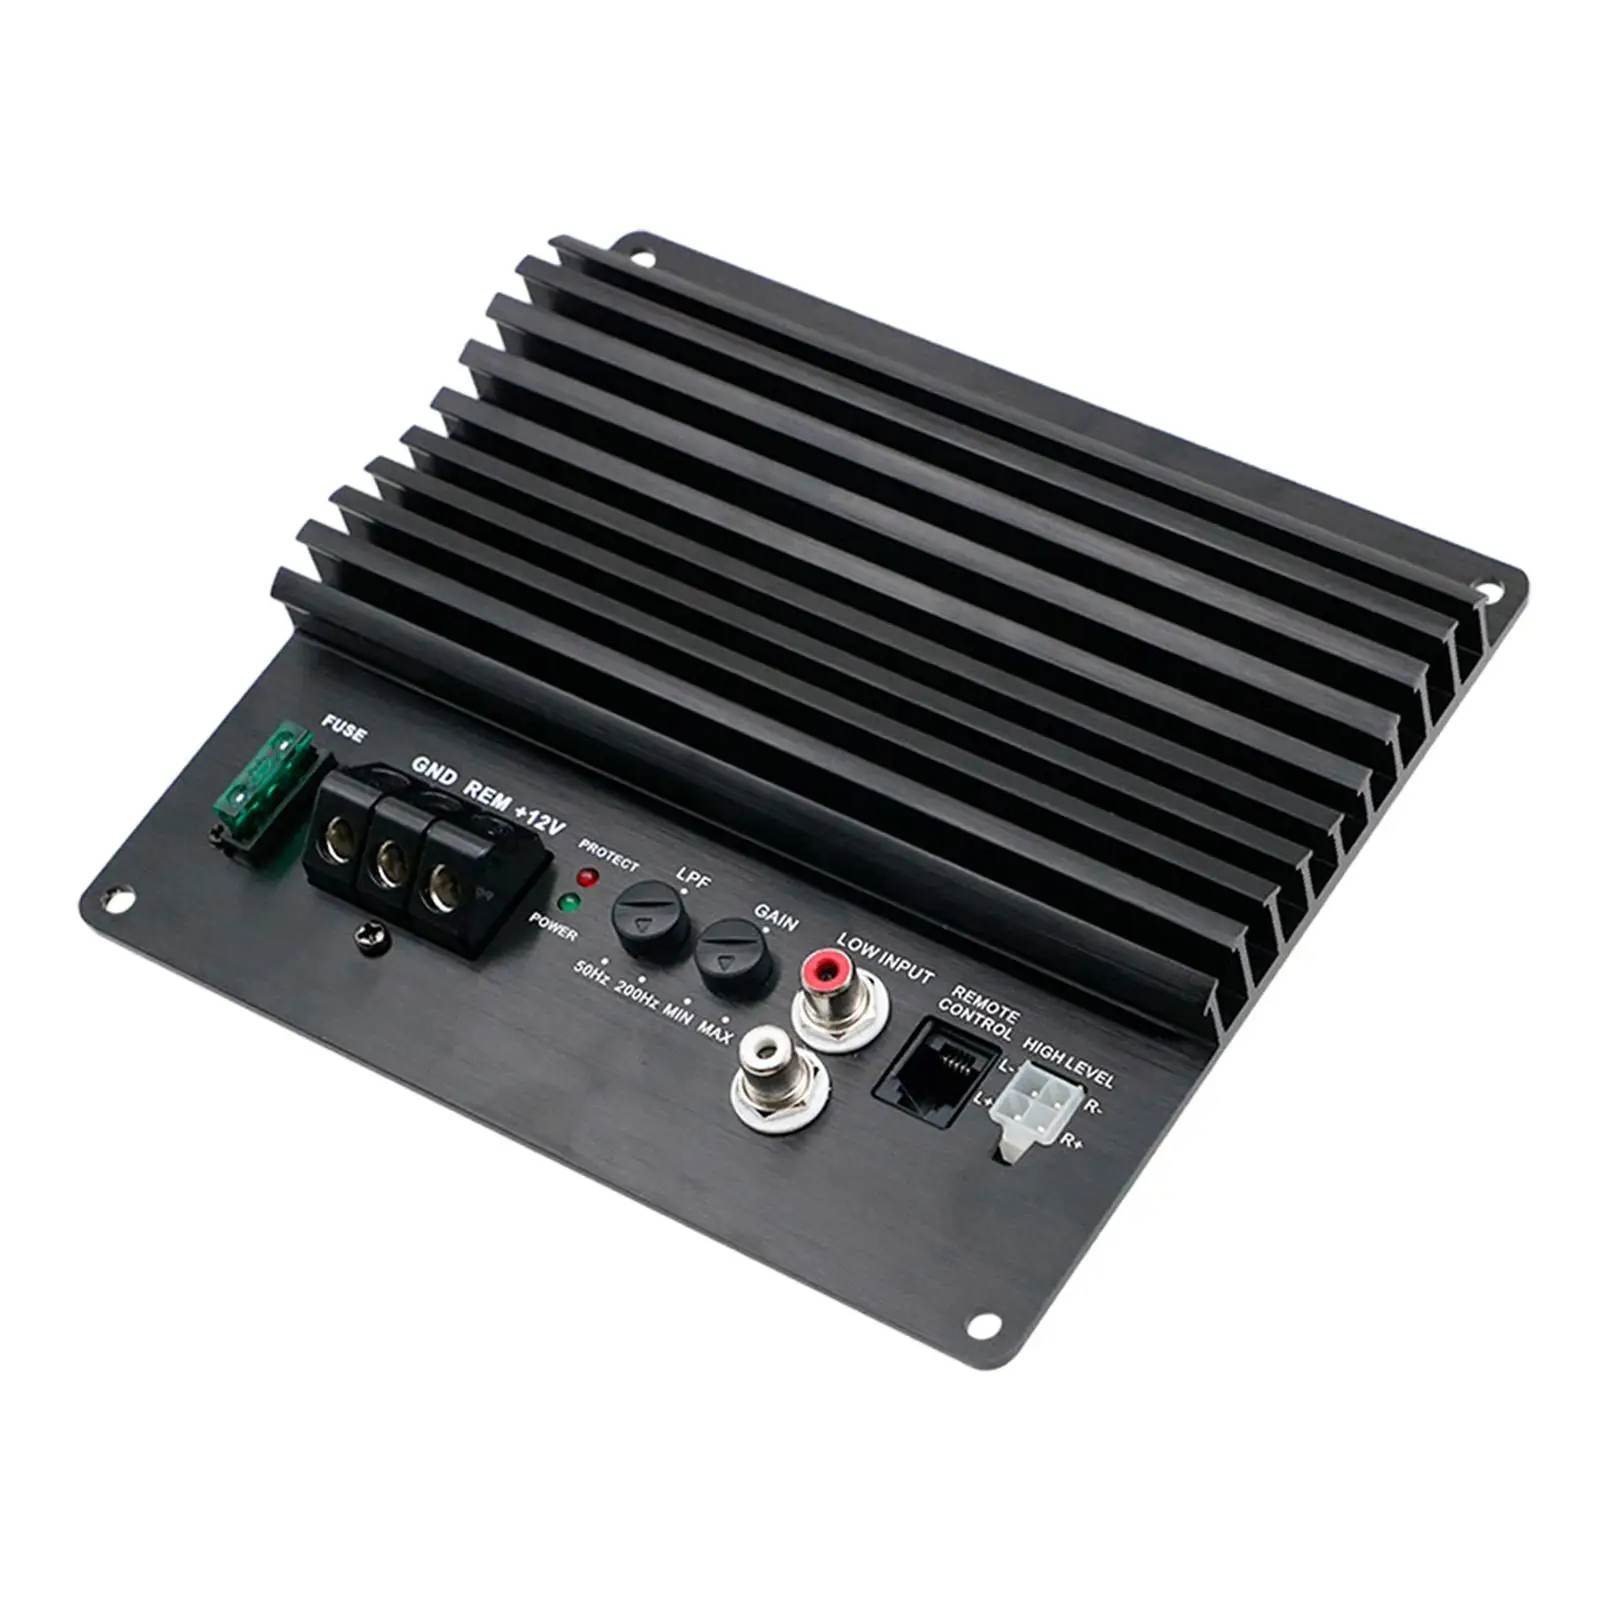 Audio Amplifier Versatile Powerful Mono Channel High Stability 120W Car Amplifier Board for Speaker Bike Boat Home Motorcycle